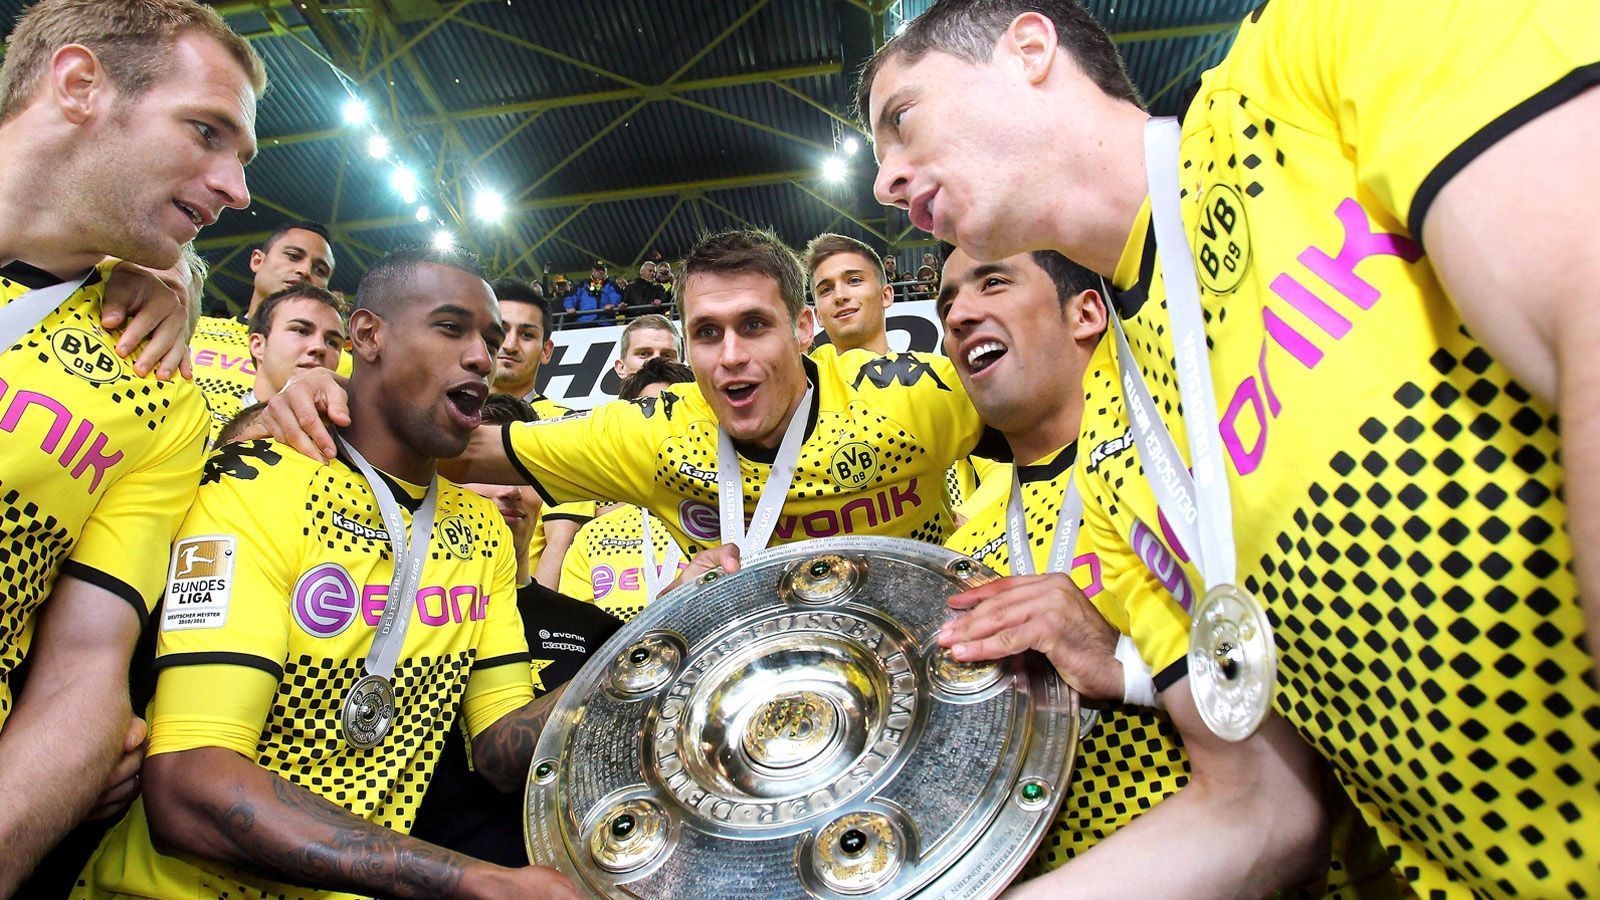 
                <strong>Borussia Dortmund: Double-Sieger 2012</strong><br>
                Borussia Dortmund sicherte sich 2012 mit spektakulärem Fußball unter Jürgen Klopp das Double aus Meisterschaft und DFB-Pokal. Doch wie haben sich die Karrieren der BVB-Stars in den vergangenen sieben Jahren entwickelt? ran.de wirft einen Blick auf die Helden von damals.
              